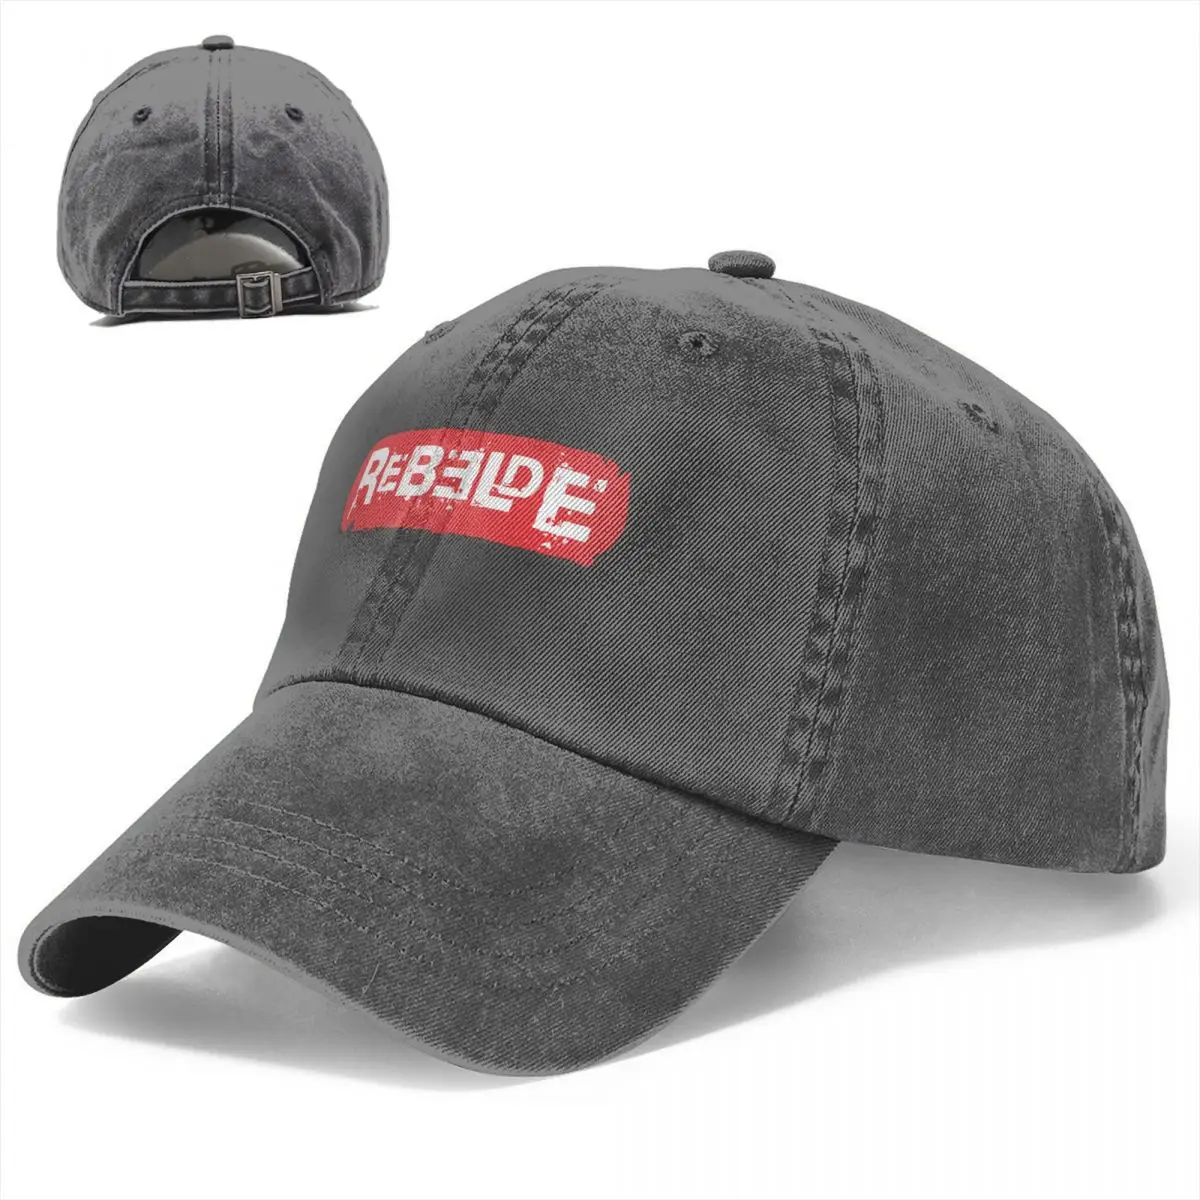 Бейсболка из промытого хлопка с логотипом Rebelde, регулируемая бейсбольная кепка, мужская бейсболка RBD, весенне-осенняя кепка в стиле хип-хоп.